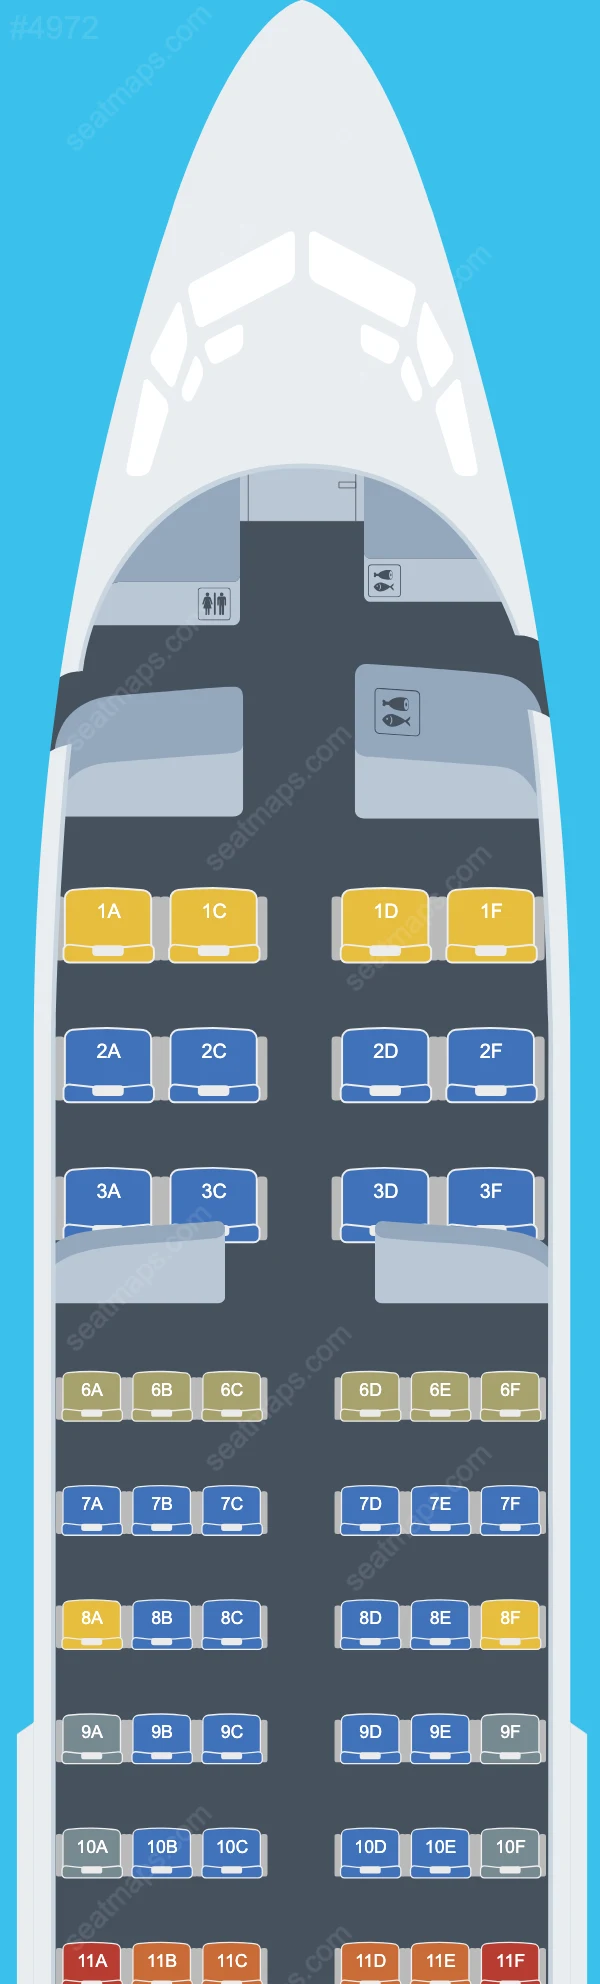 Regent Airways Boeing 737 Seat Maps 737-700